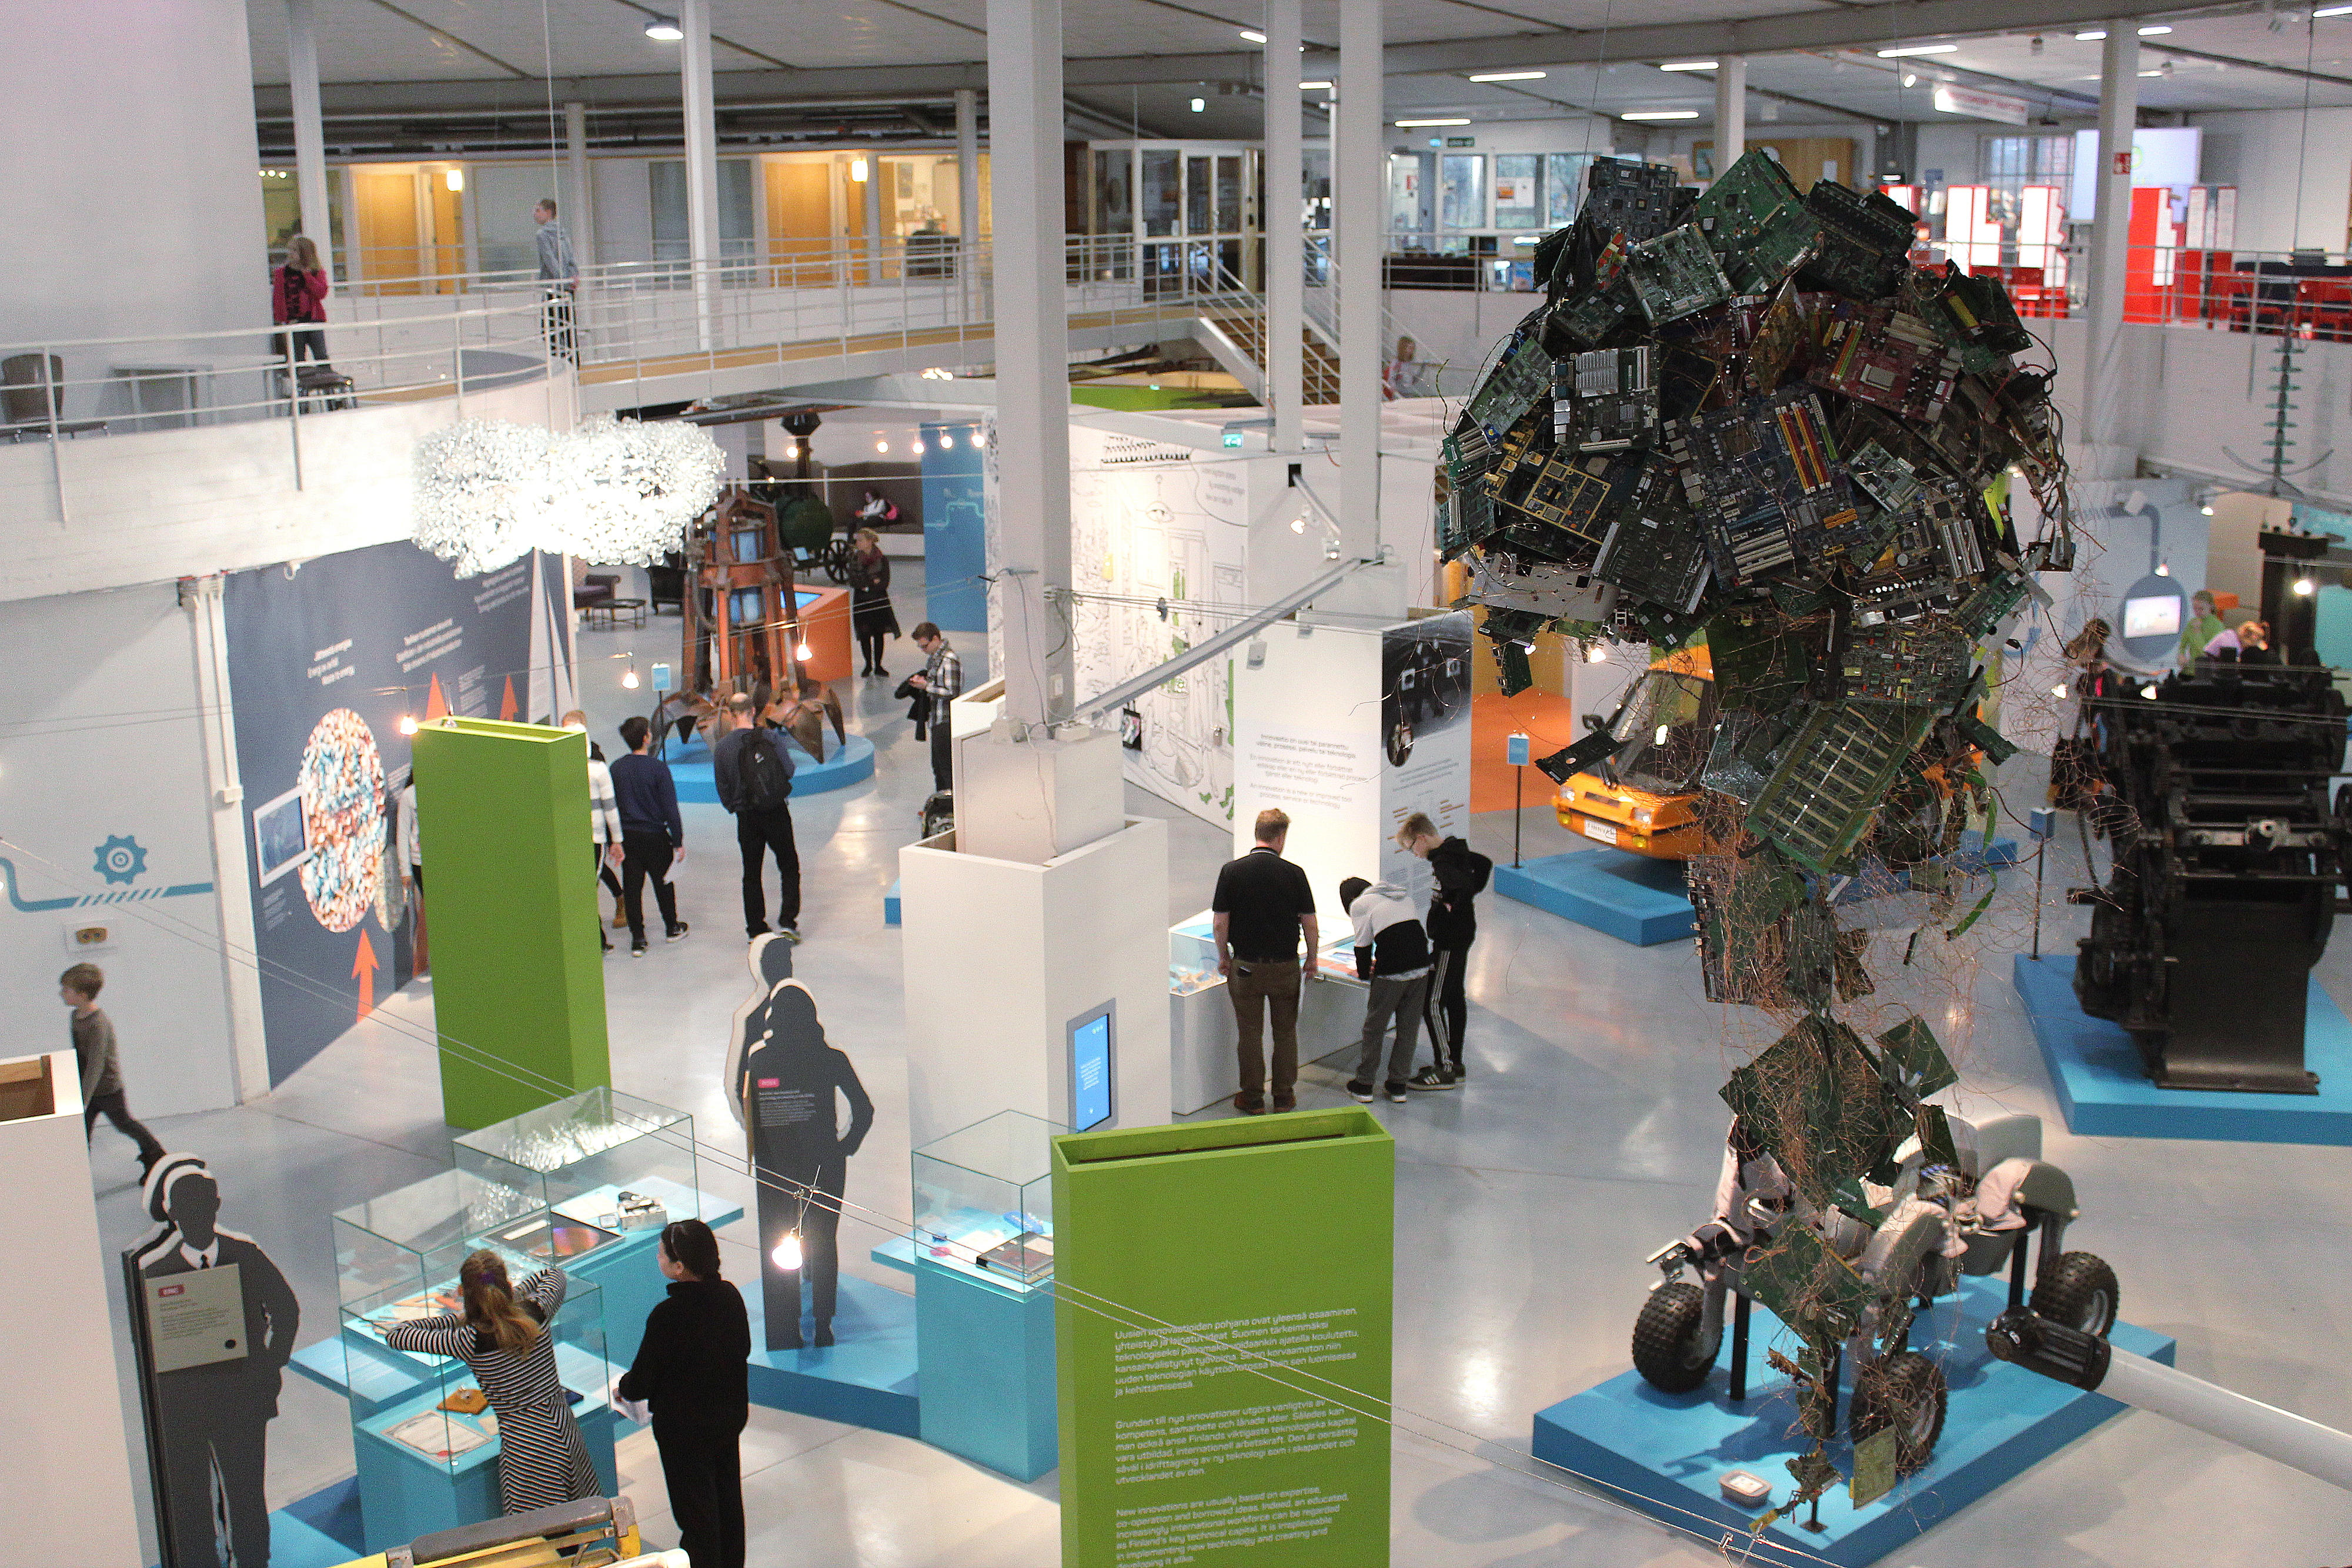 Tekniikan museon näyttelytiloissa vilisee ihmisiä, jotka seisoskelevat esineiden edessä kirkkaassa valaistuksessa.